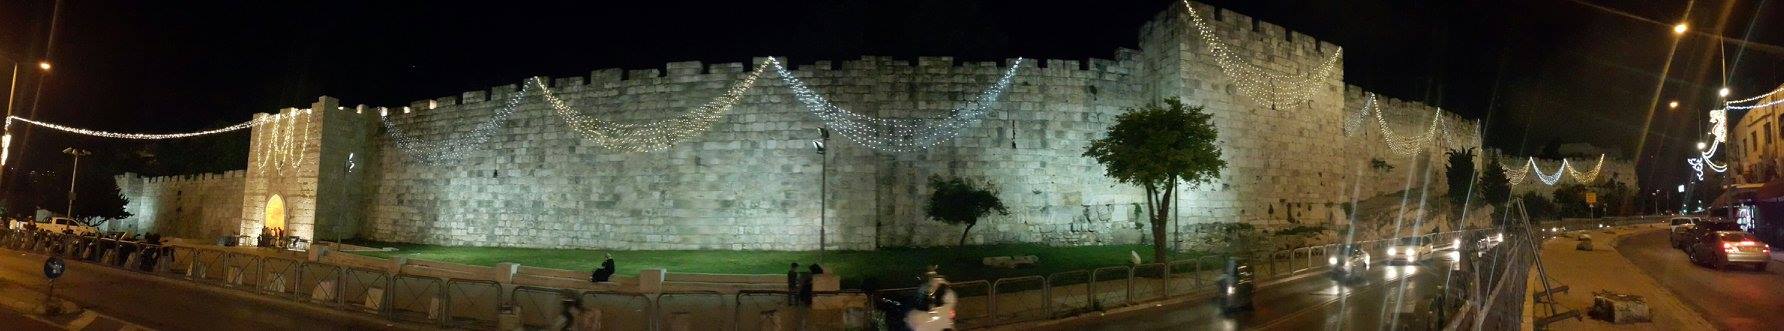 耶稣时期圣城的城墙也放上灯饰。